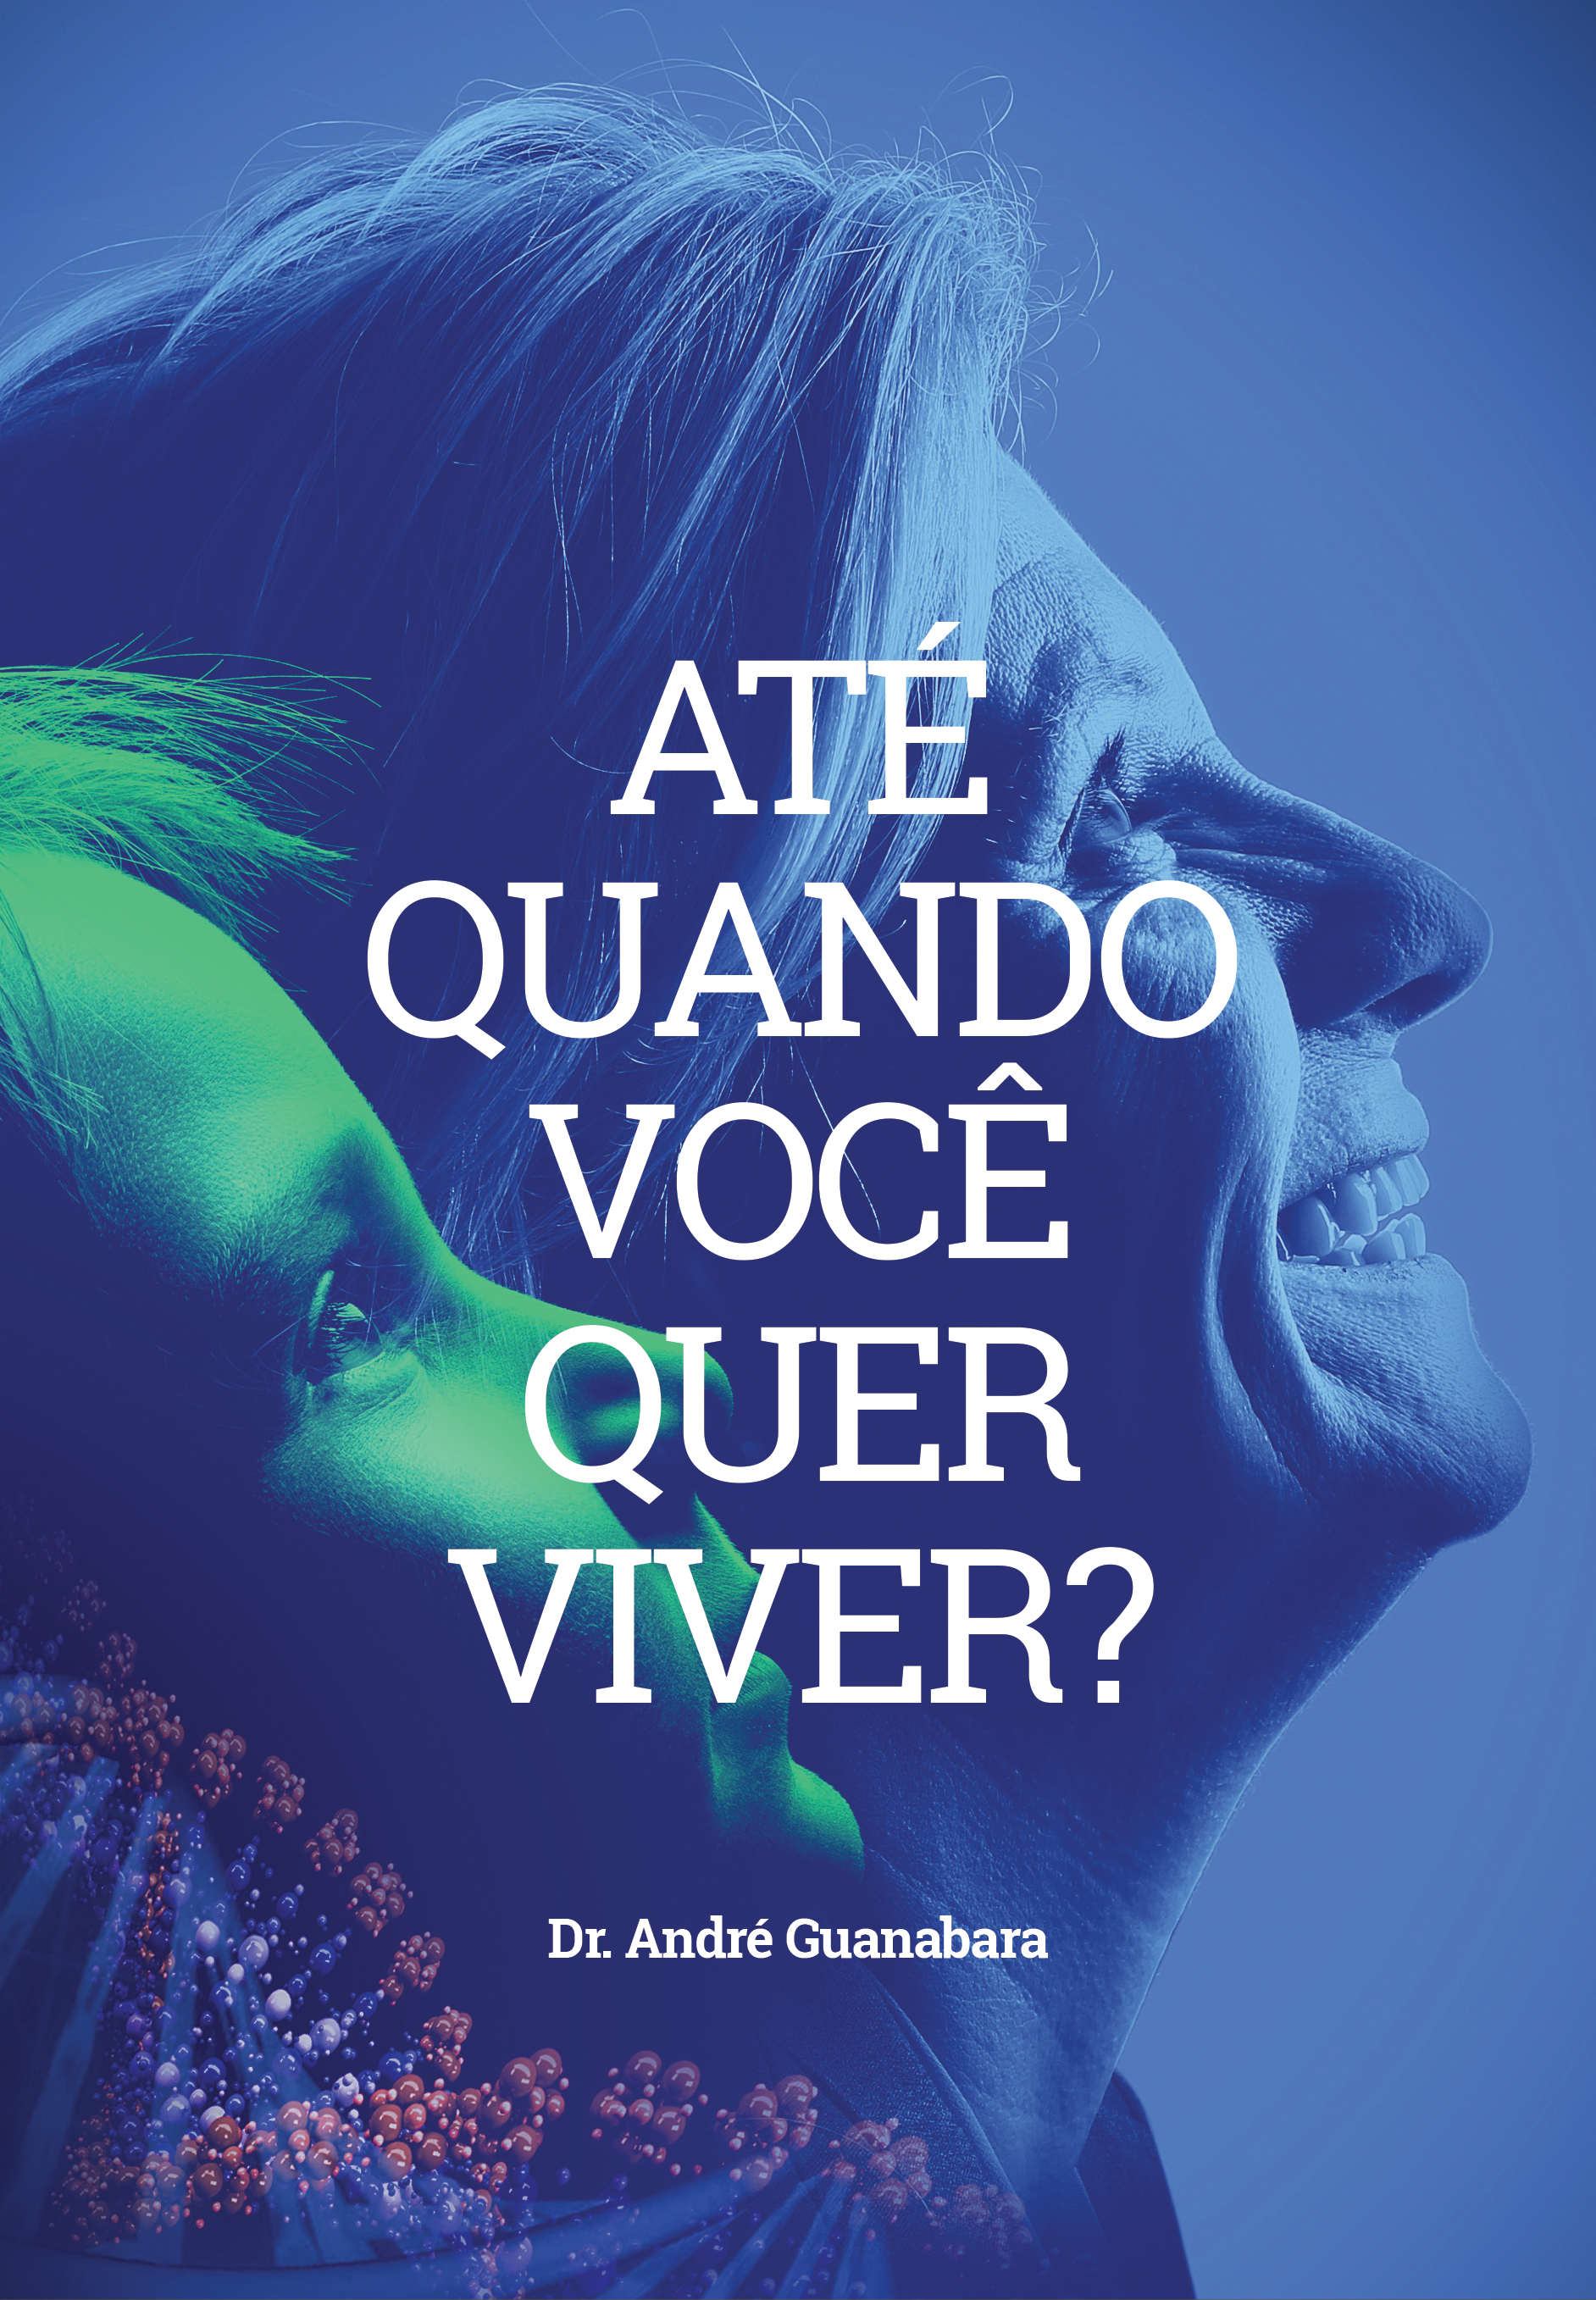  Capa do livro "Até quando você quer viver?", de André Guanabara. (Foto: Divulgação)